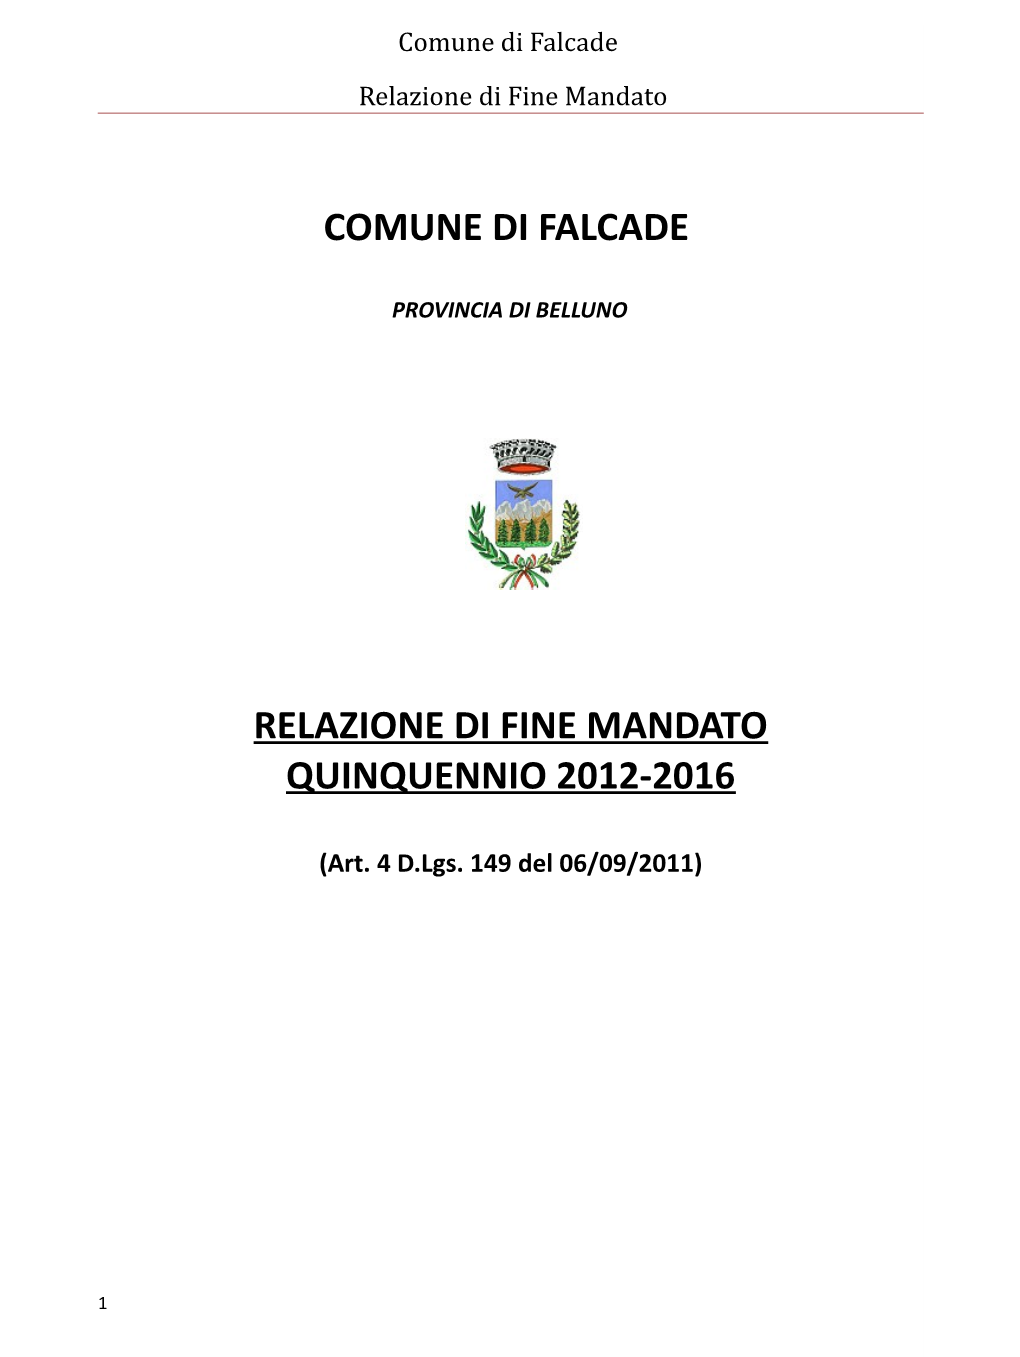 Comune Di Falcade Relazione Di Fine Mandato Quinquennio 2012-2016